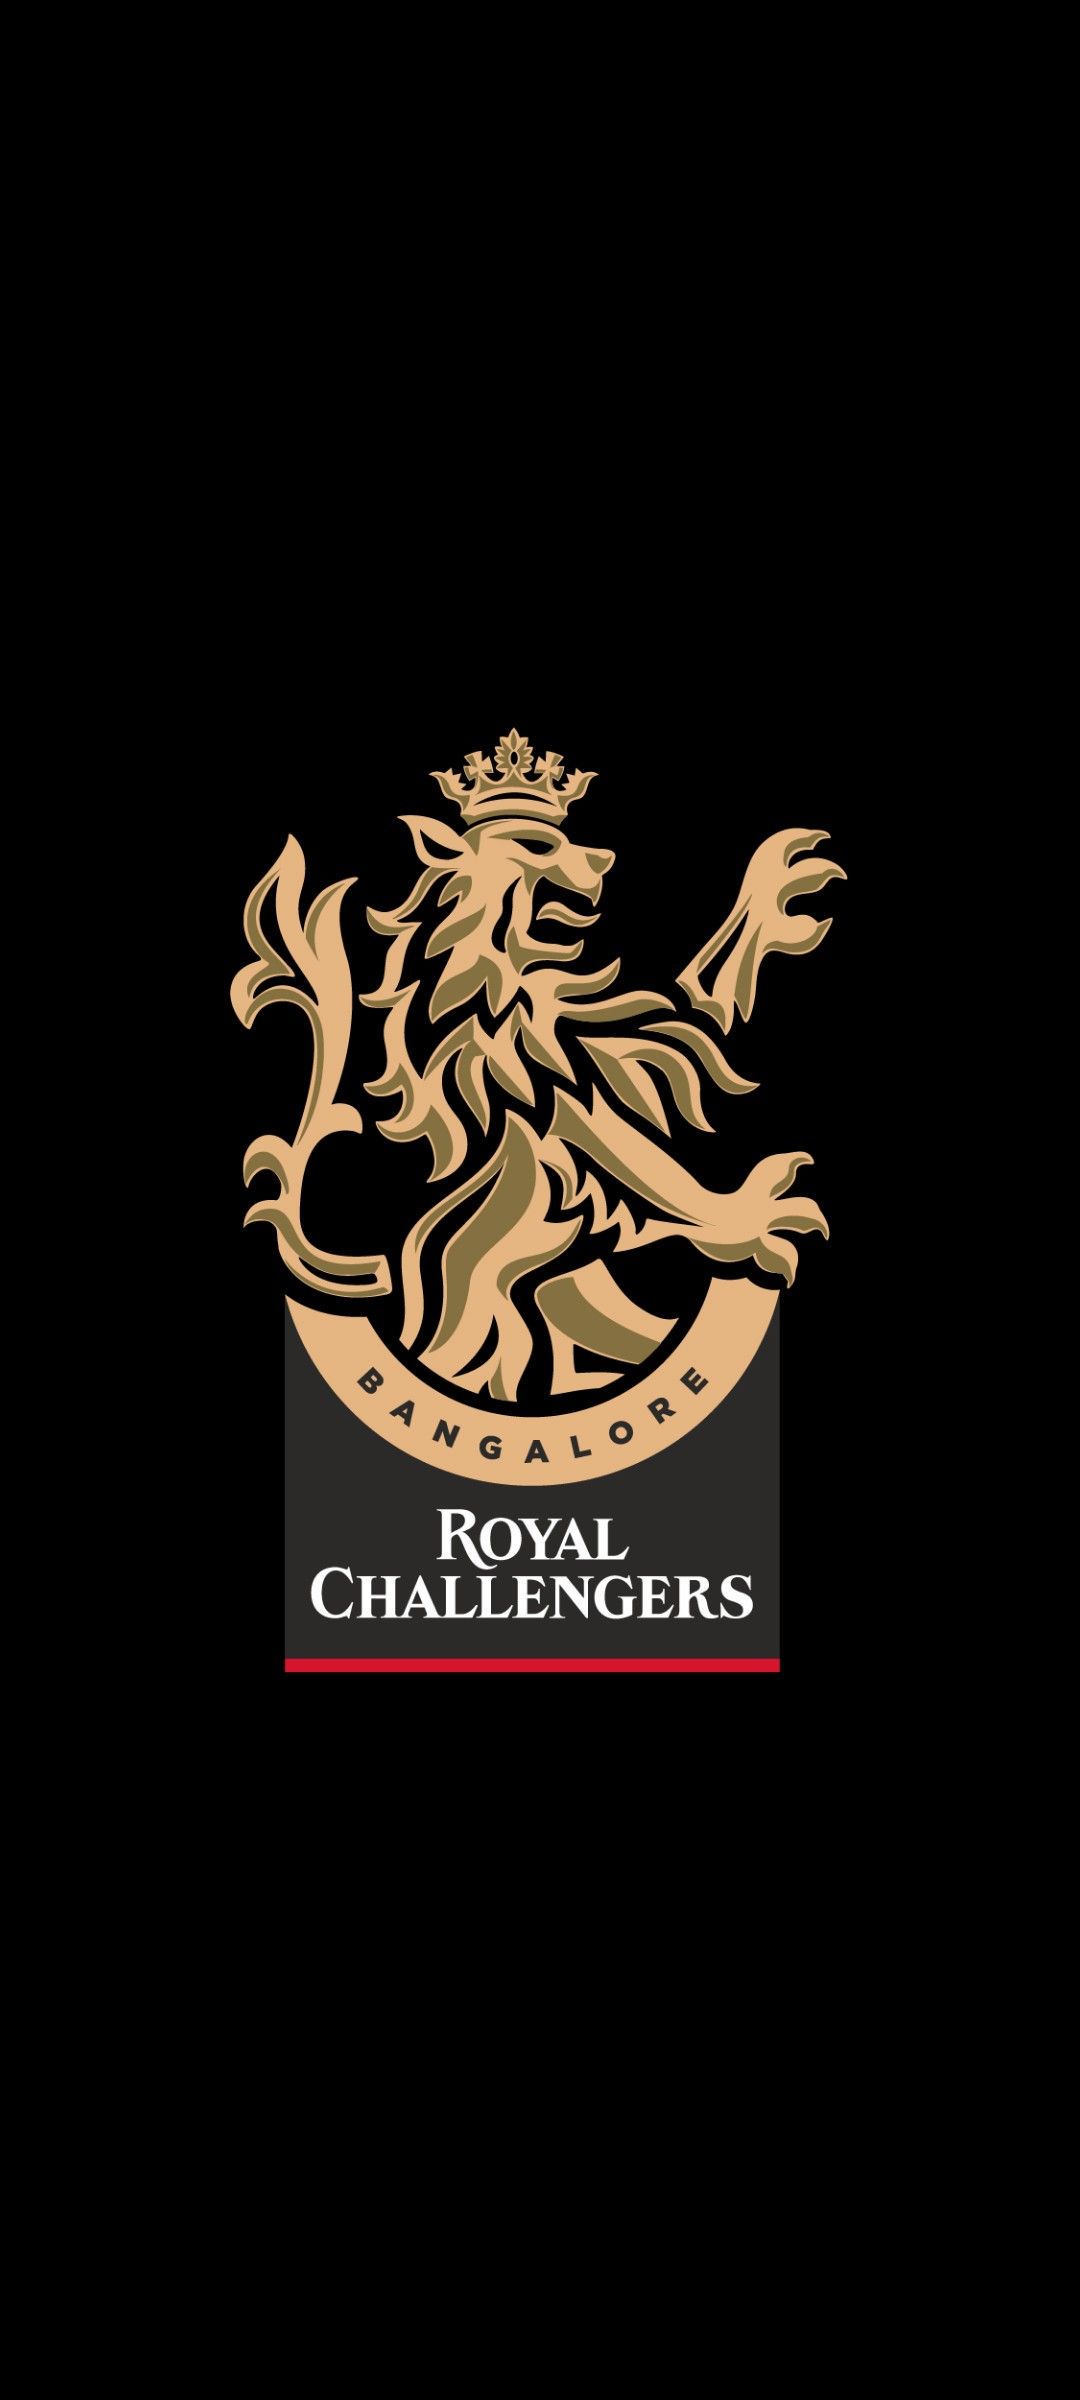 RCB Logo Royal challengers bangalore Ab de villiers photo Dp 1080x2400